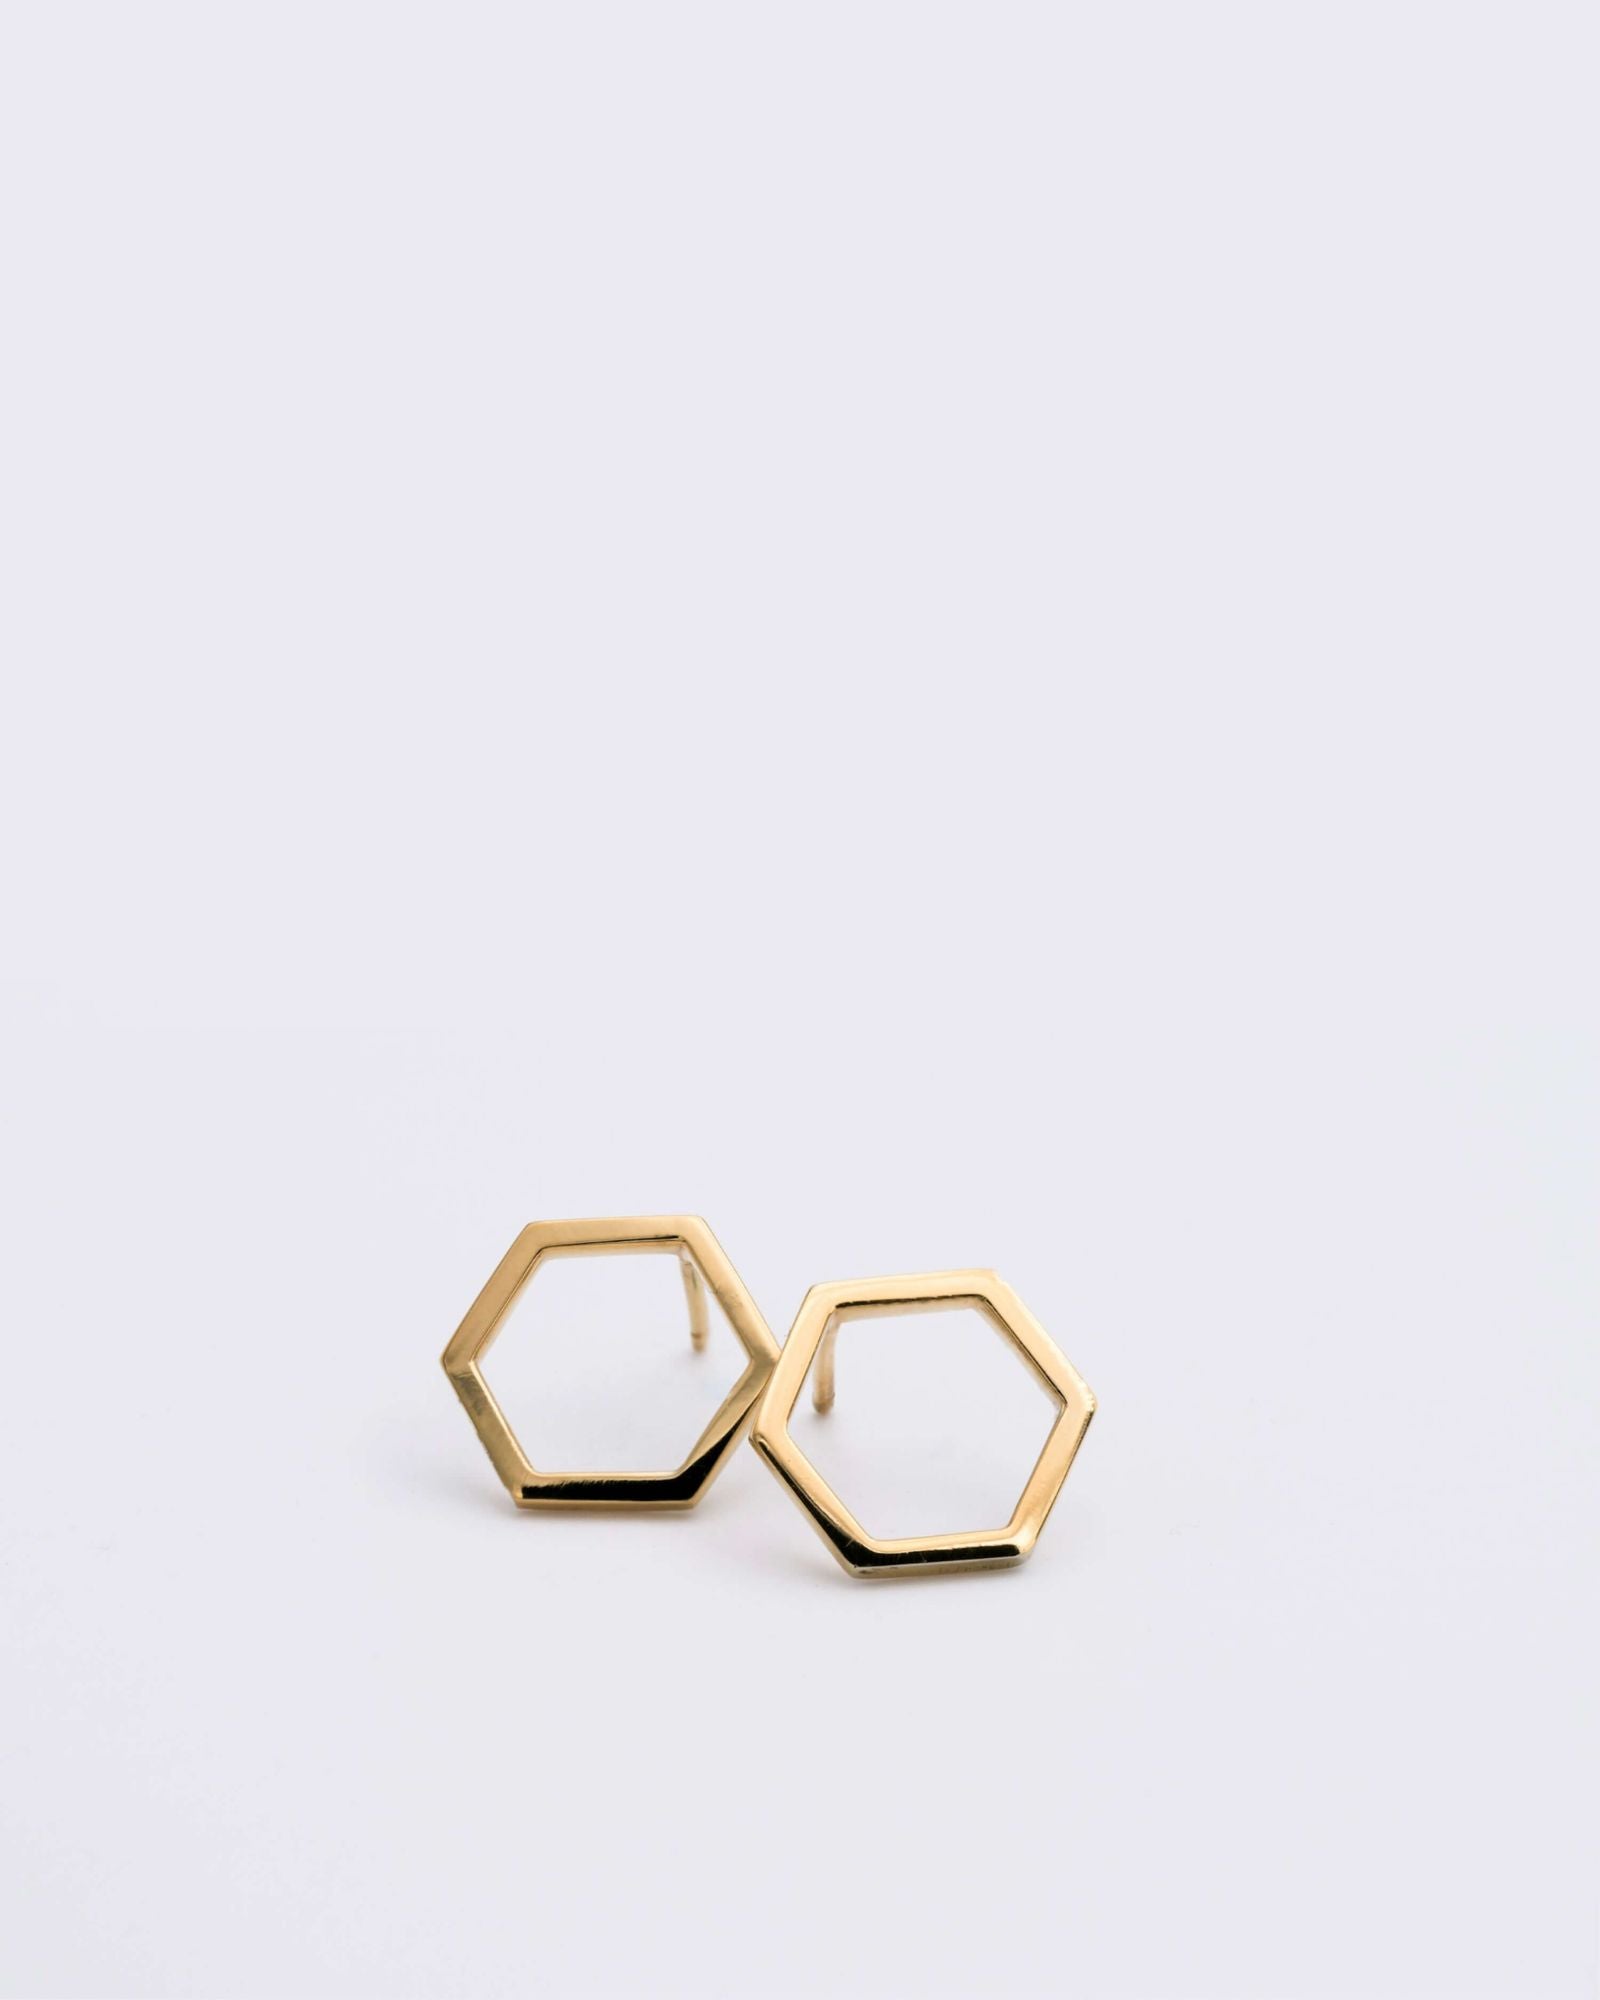 Boucles d'oreilles éthiques modèles Essentiel 14, forme hexagonale en or jaune non portées sur fond blanc.